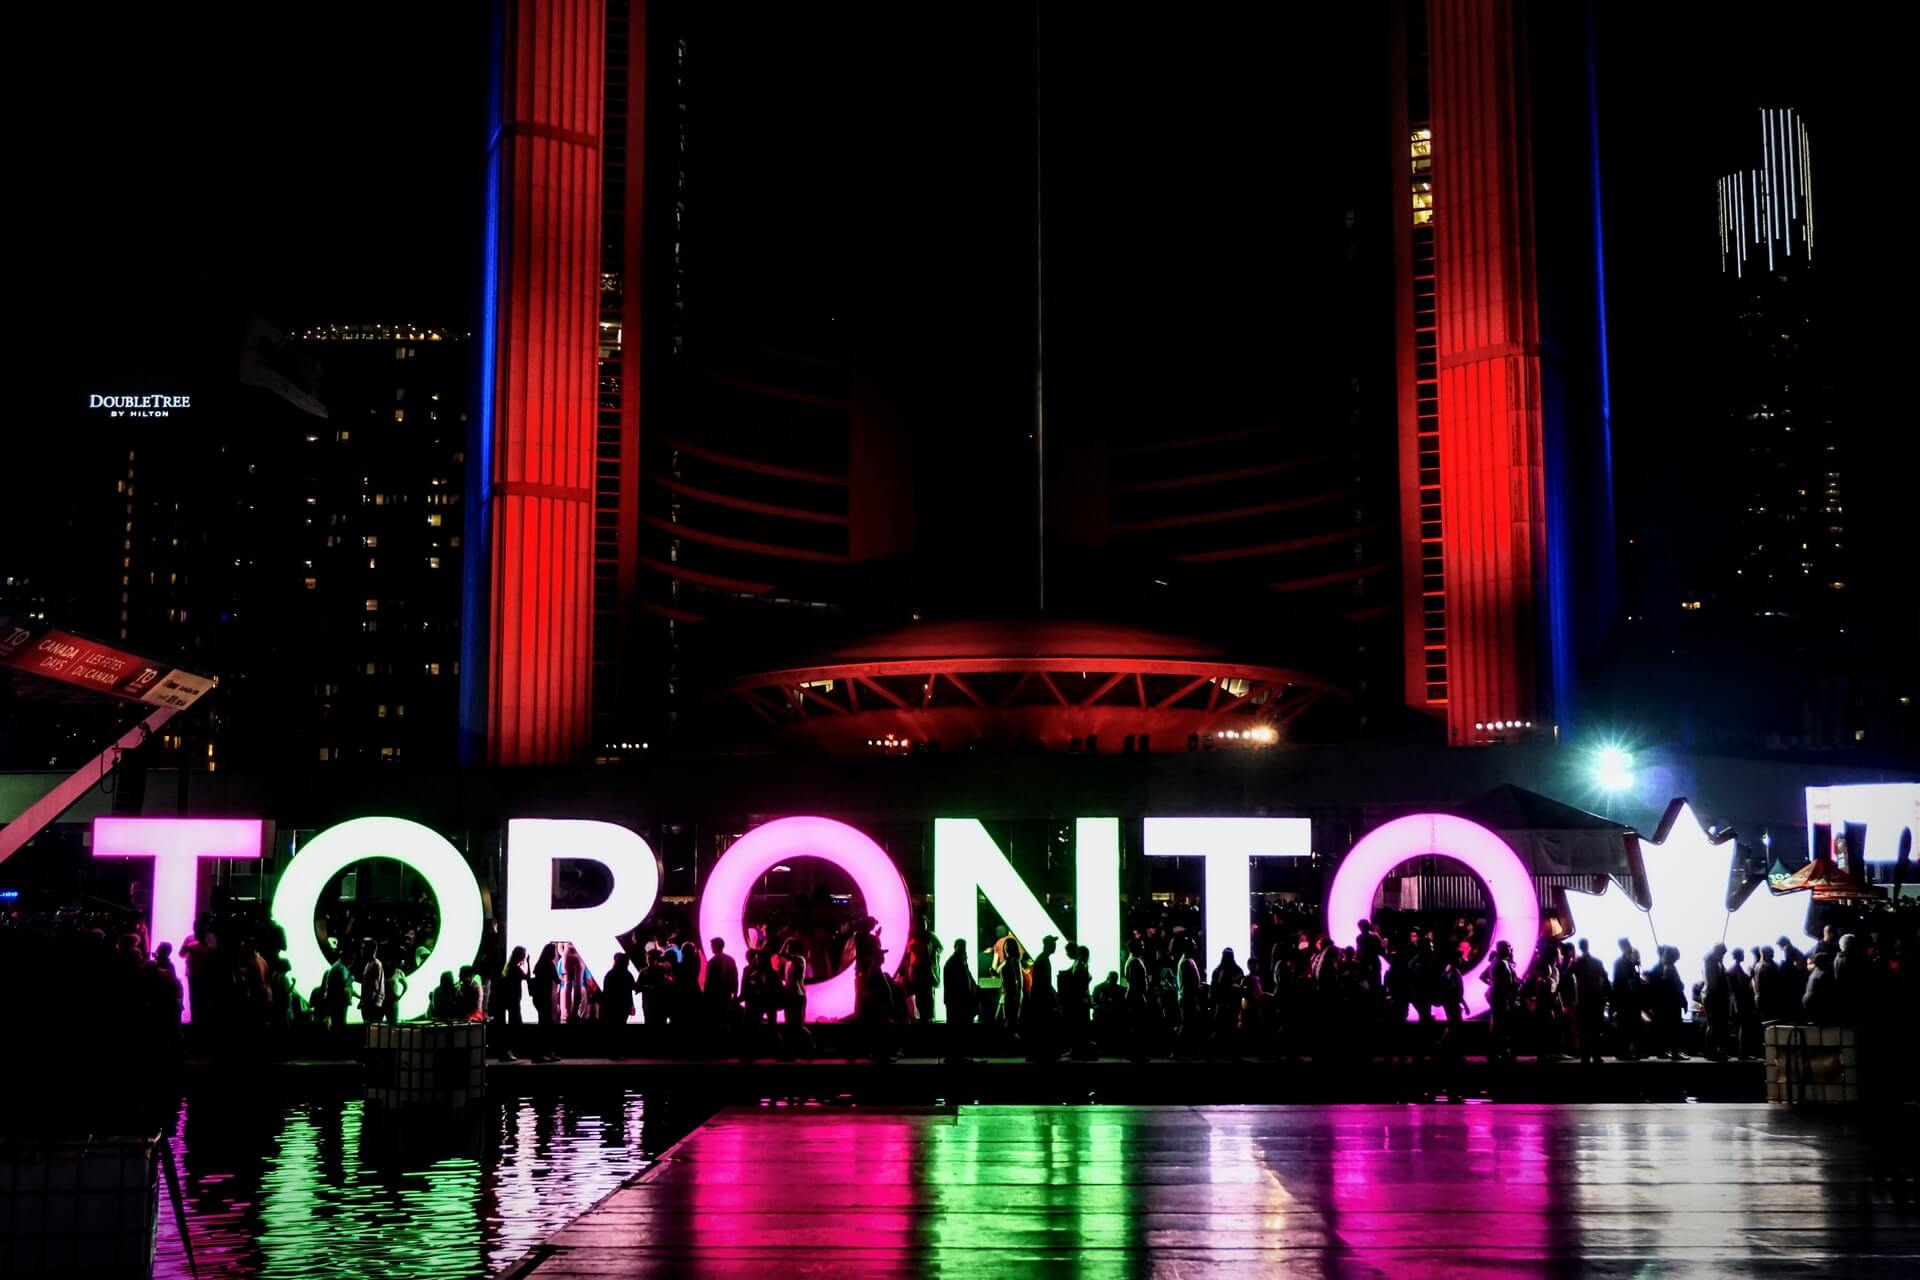 3D Toronto Sign at night